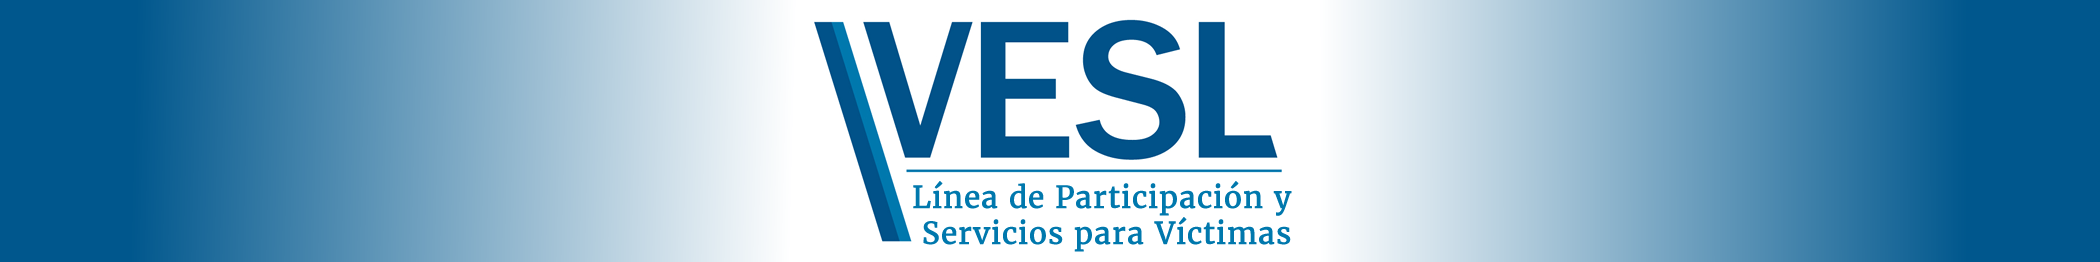 Línea de Participación y Servicios para Víctimas (VESL, por sus siglas en inglés)